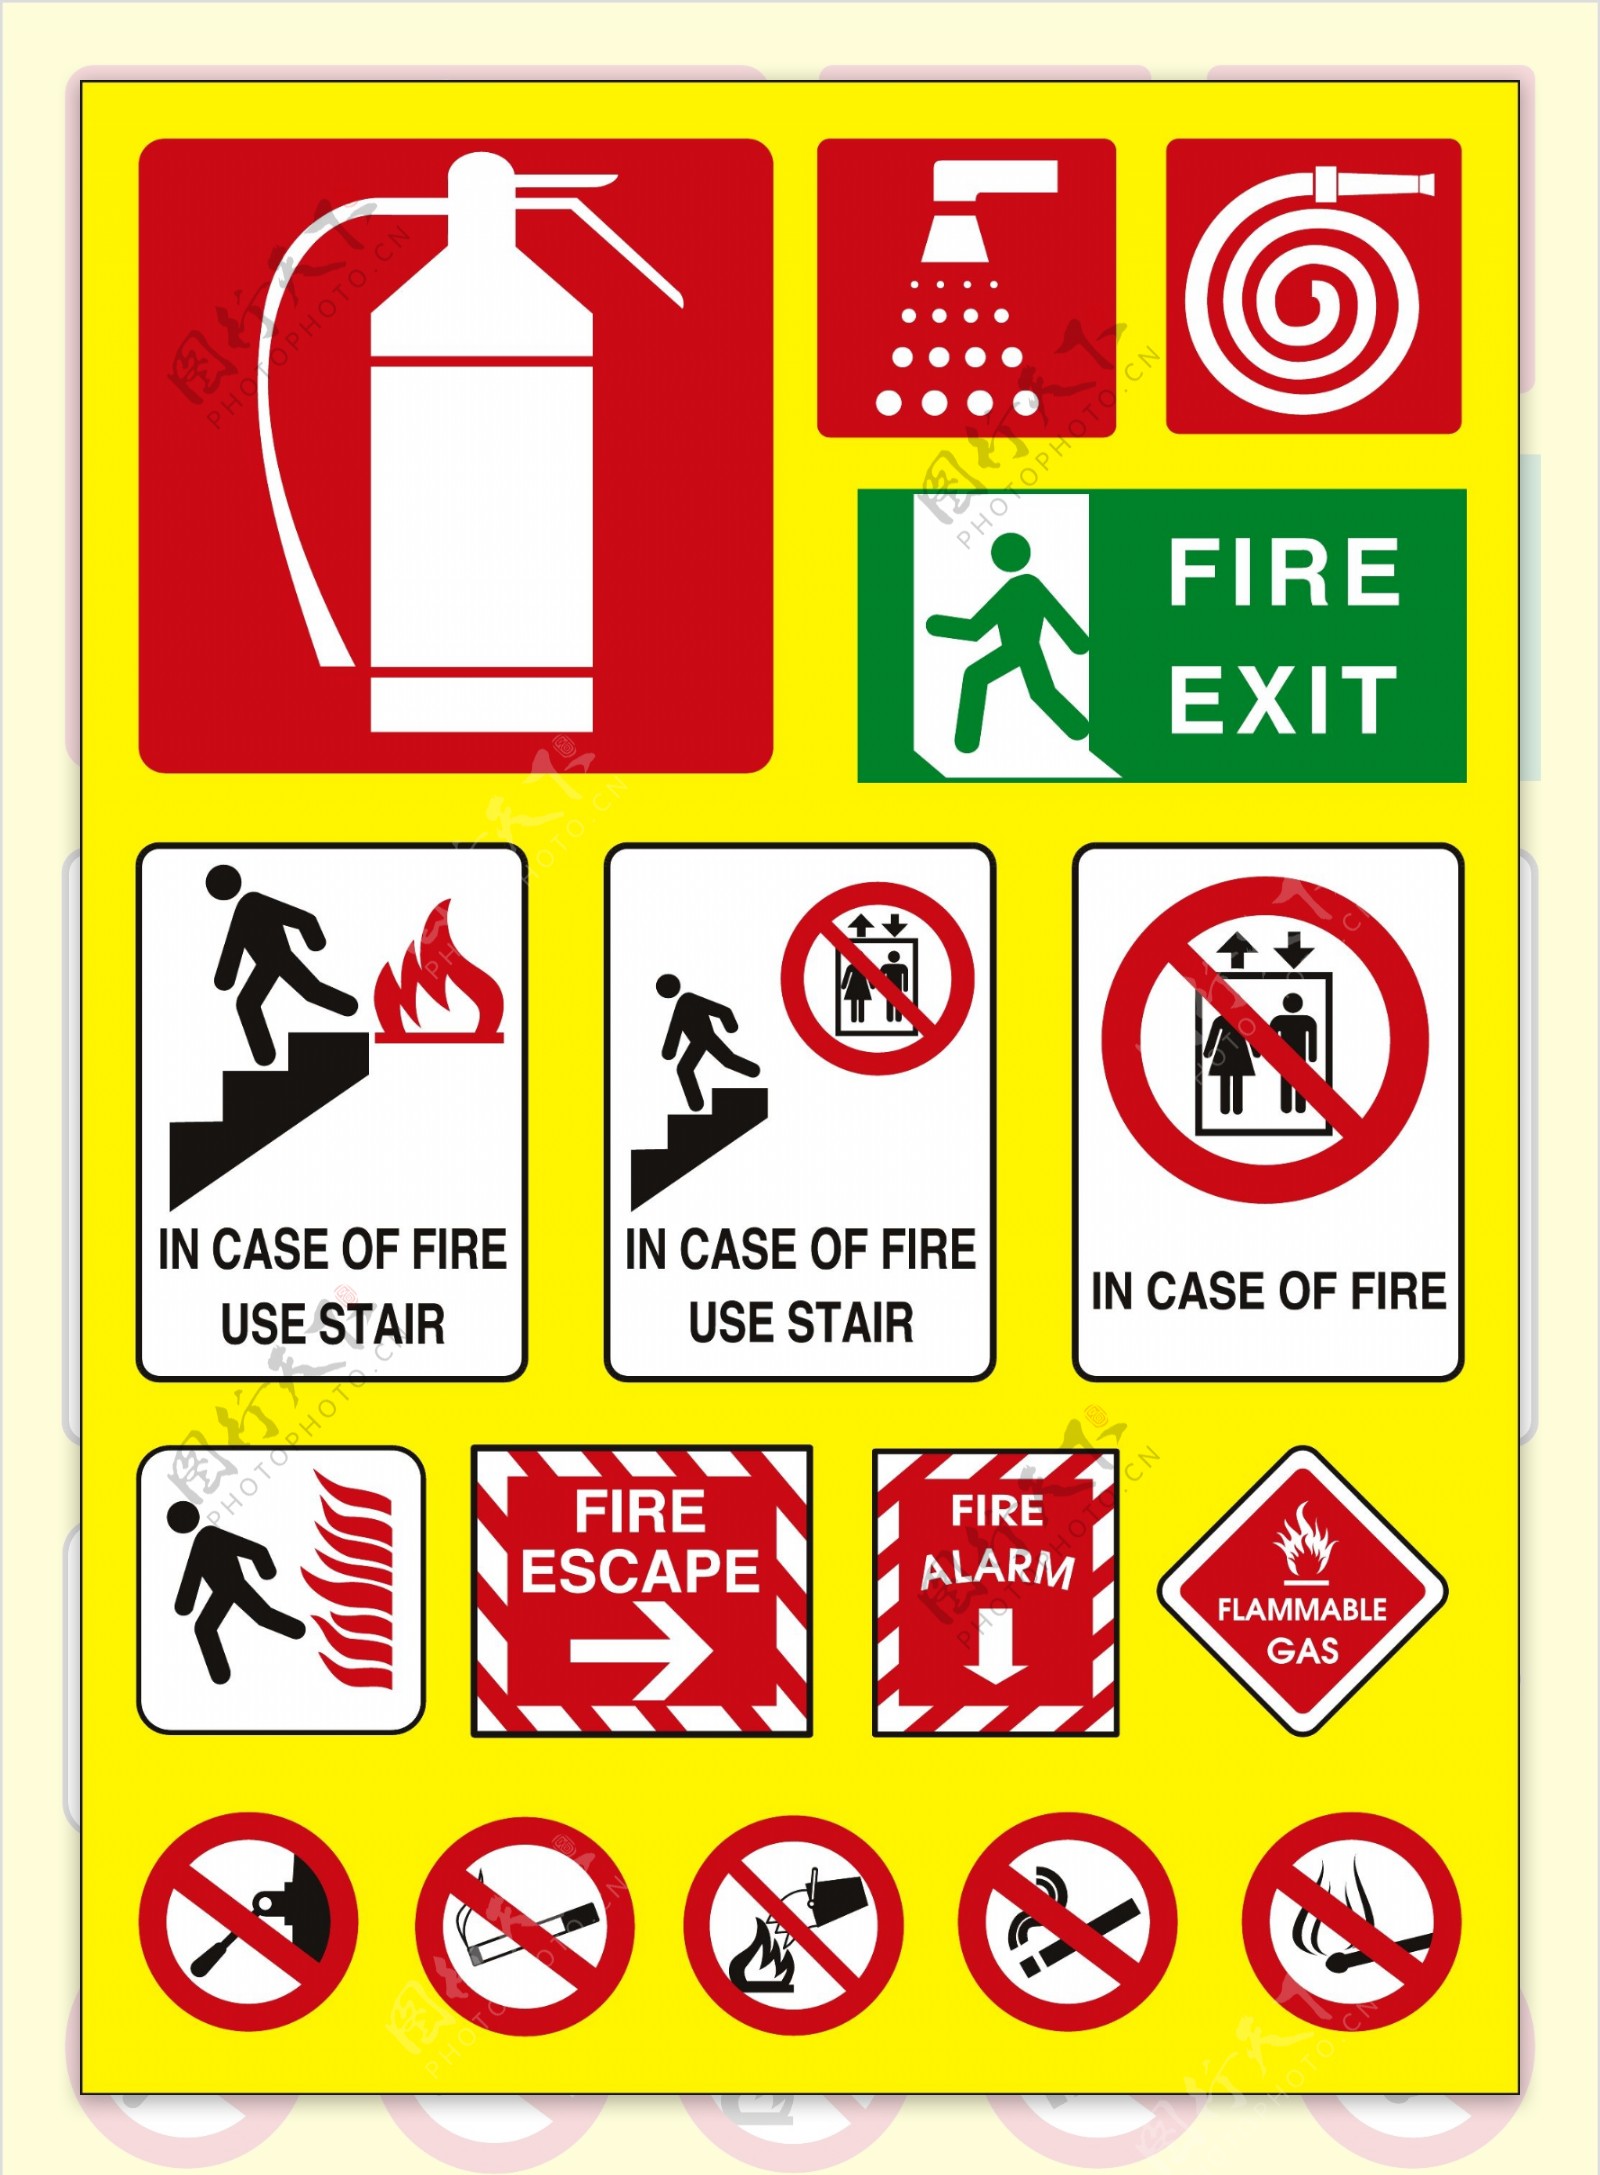 防火主题标识图片